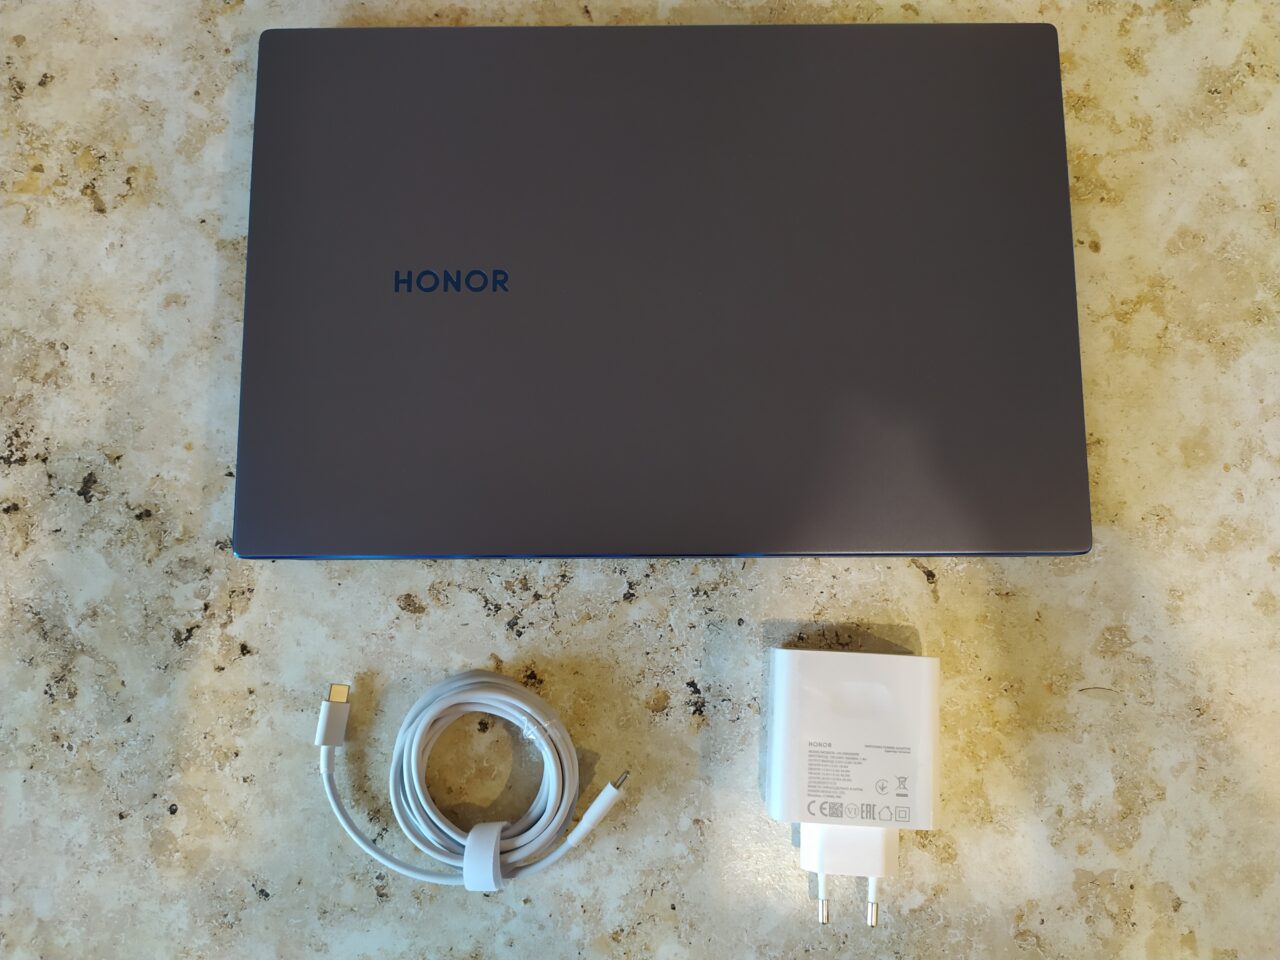 Обзор ноутбука HONOR MagicBook 14 Intel Core i7. Производительный ПК в компактном корпусе